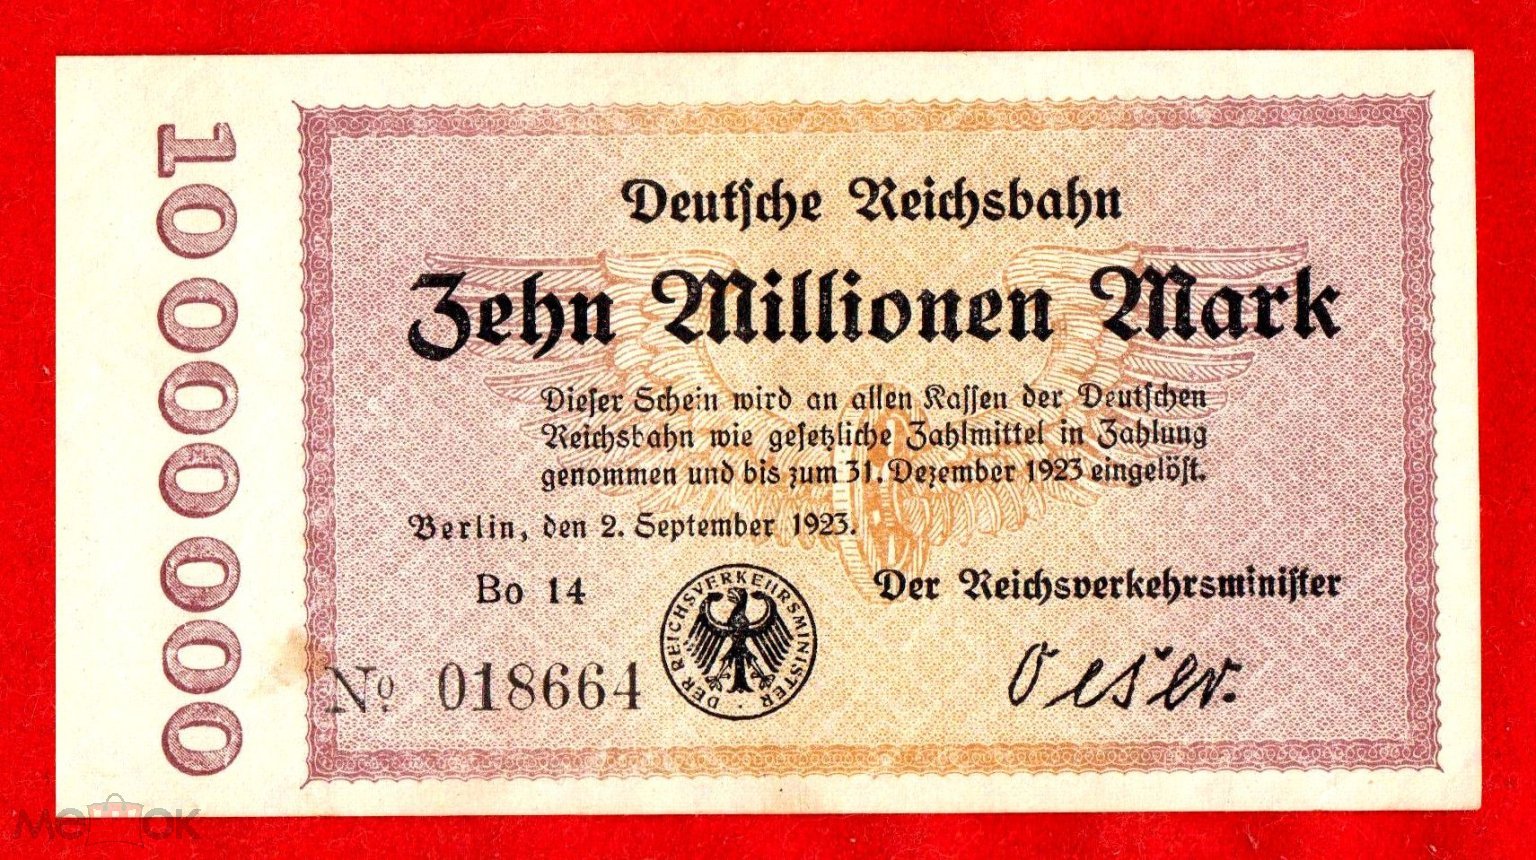 Германия (Железная дорога, Берлин), 10000000 (10 млн.) марок, 1923, aUNC, Bo 14 018664